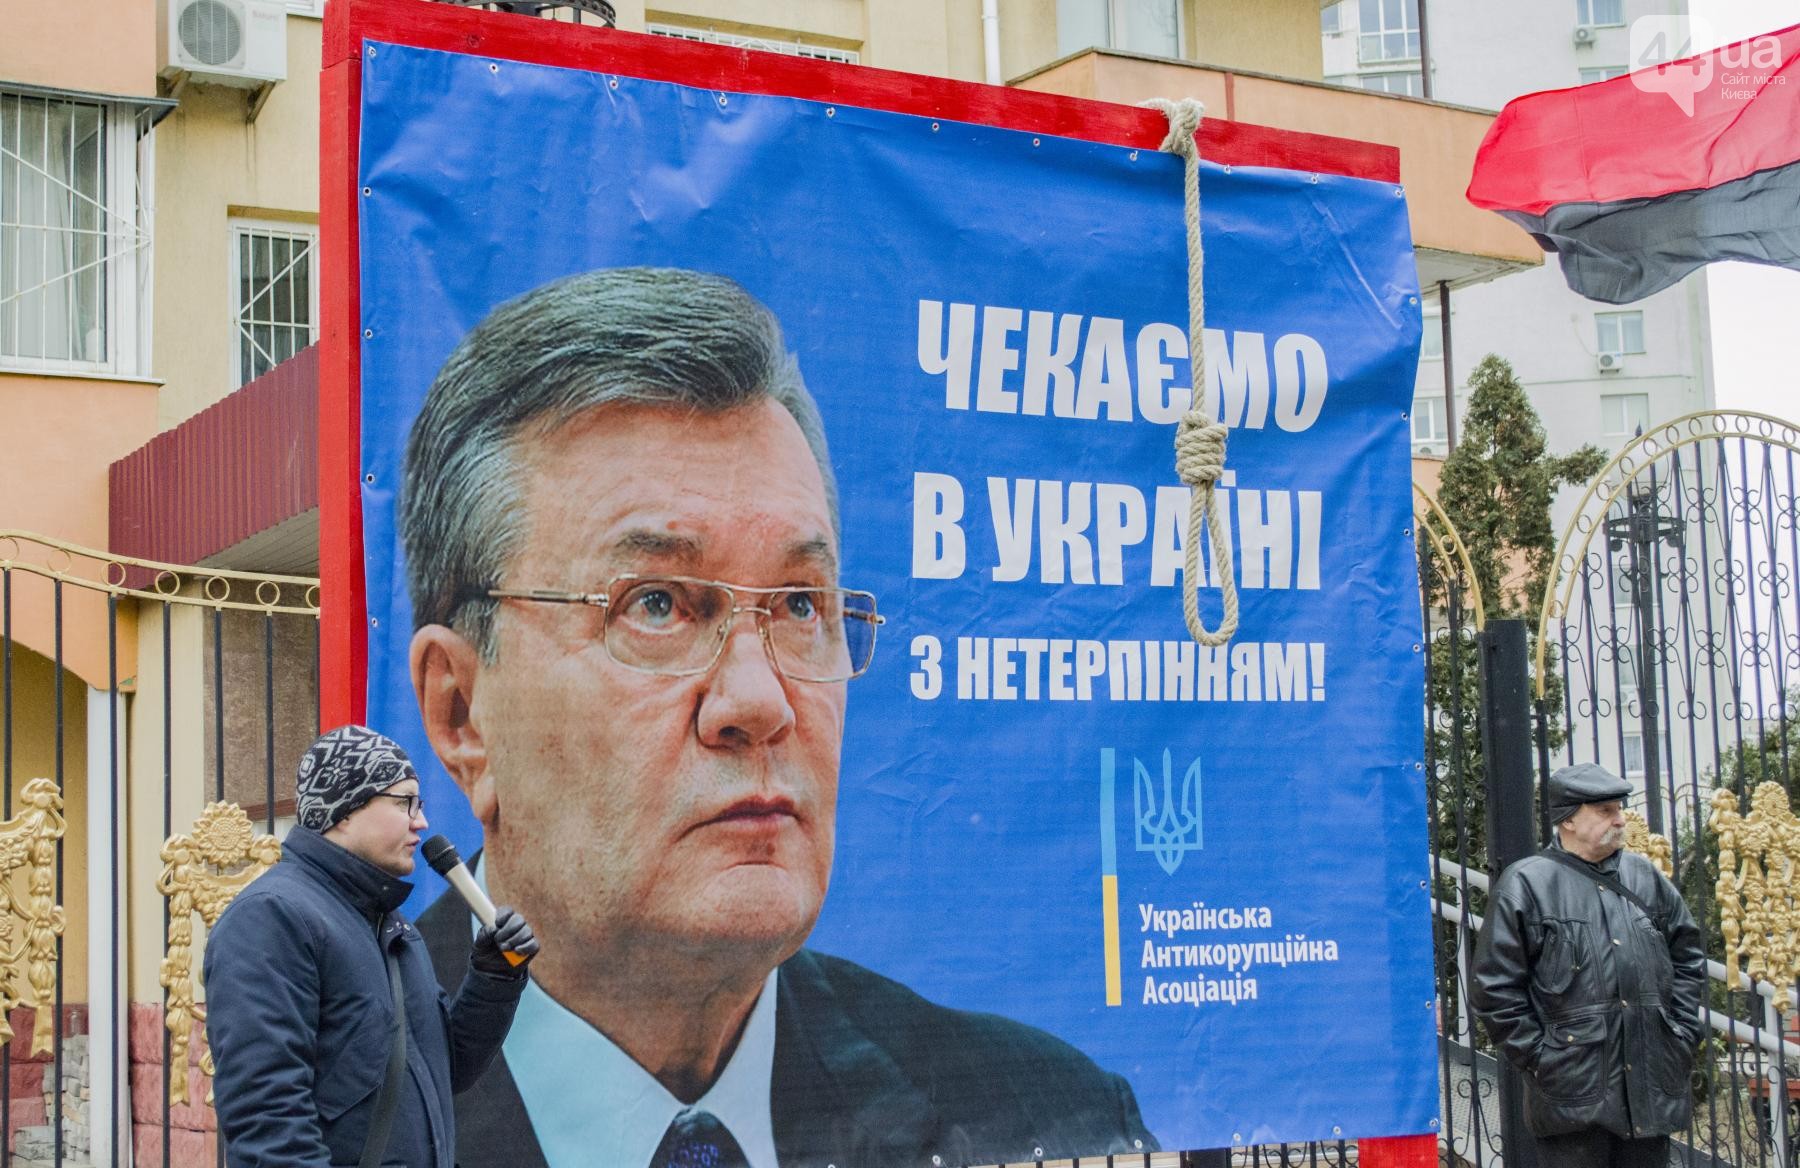 "Ждем в Украине с нетерпением", - в Киеве установили виселицу, предназначенную для Януковича